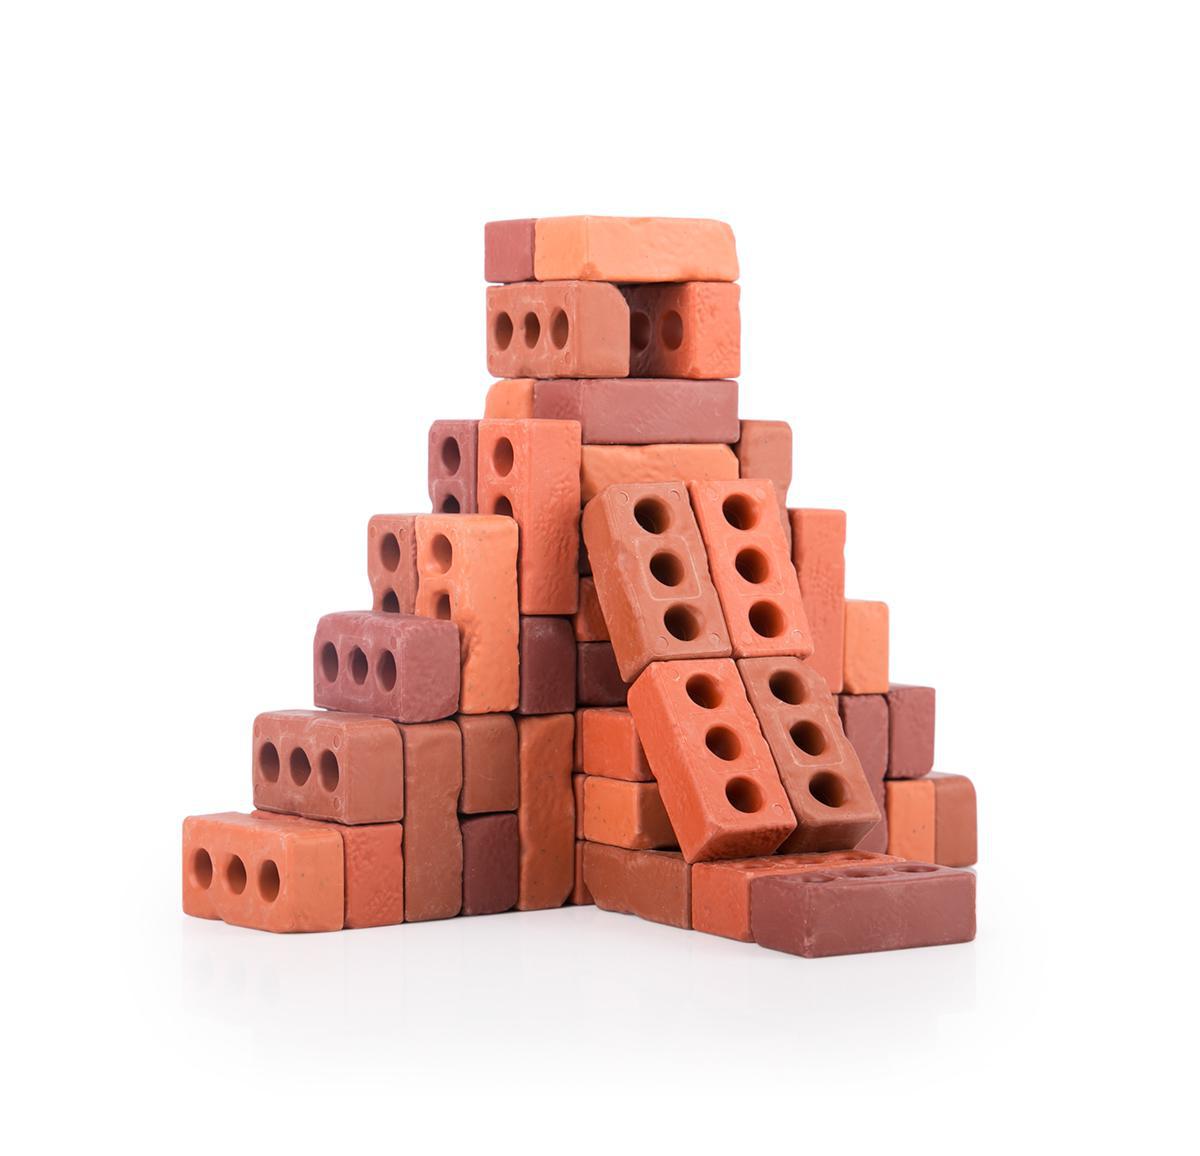  Little Bricks 60-Piece Set 